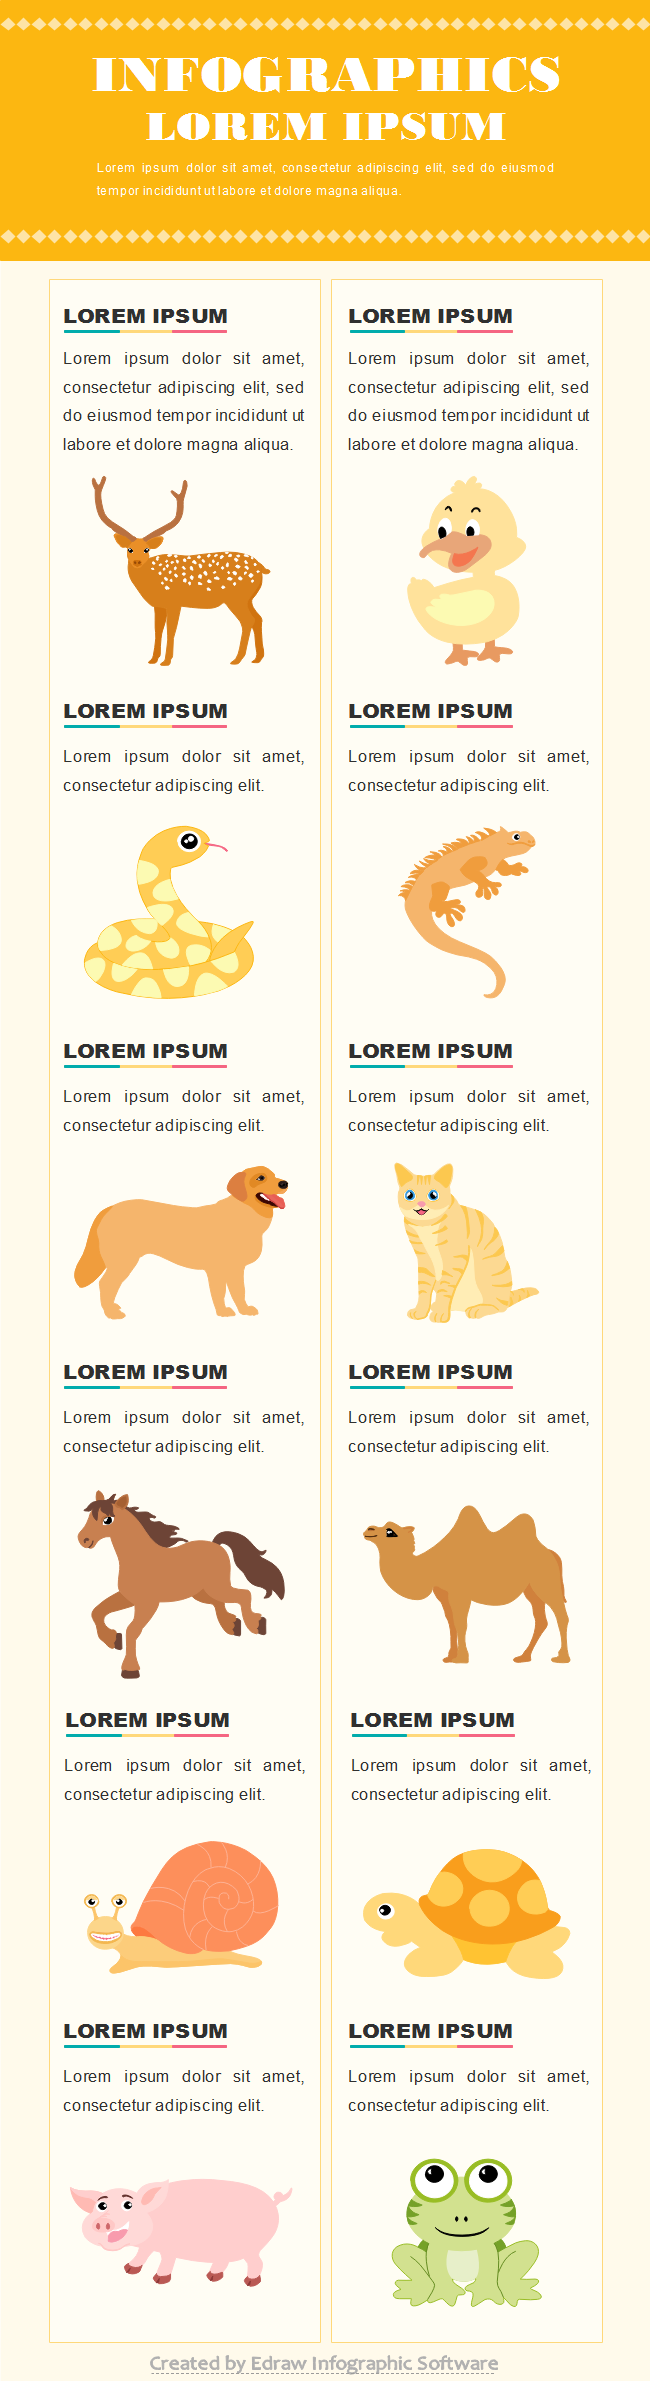 Modello di infografica sulla tipologia di animali